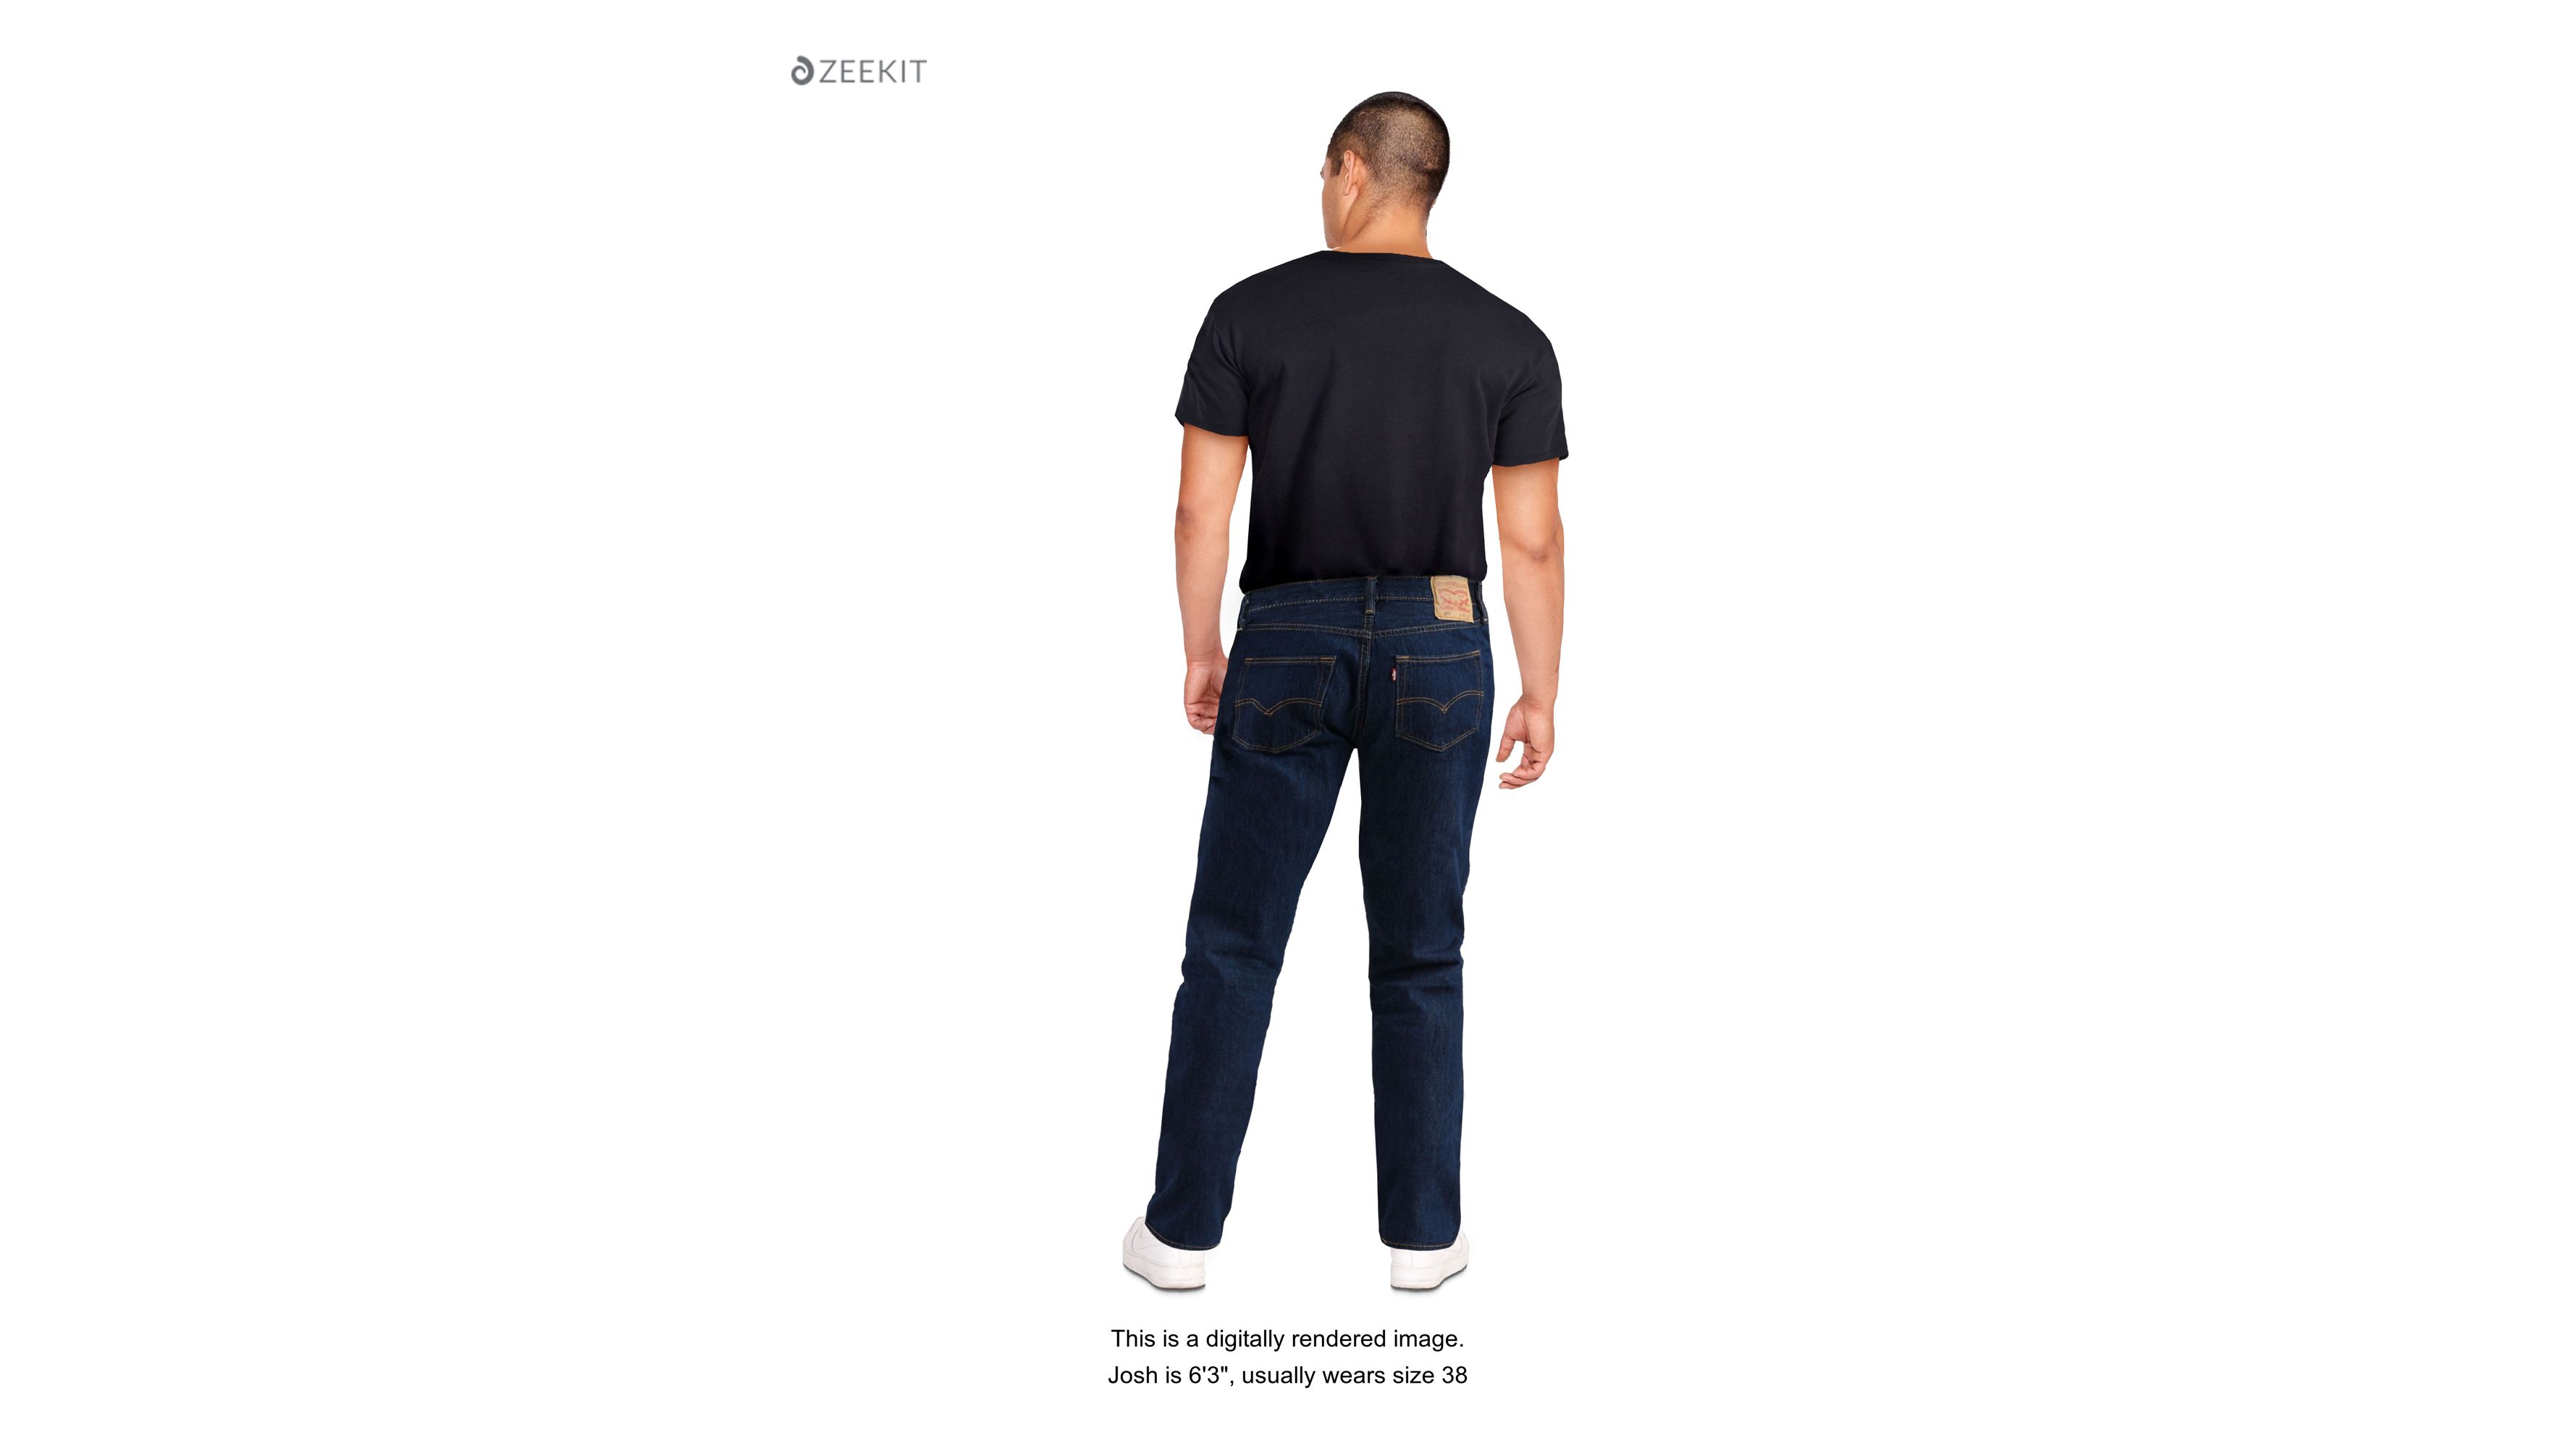 levis 5001 jeans